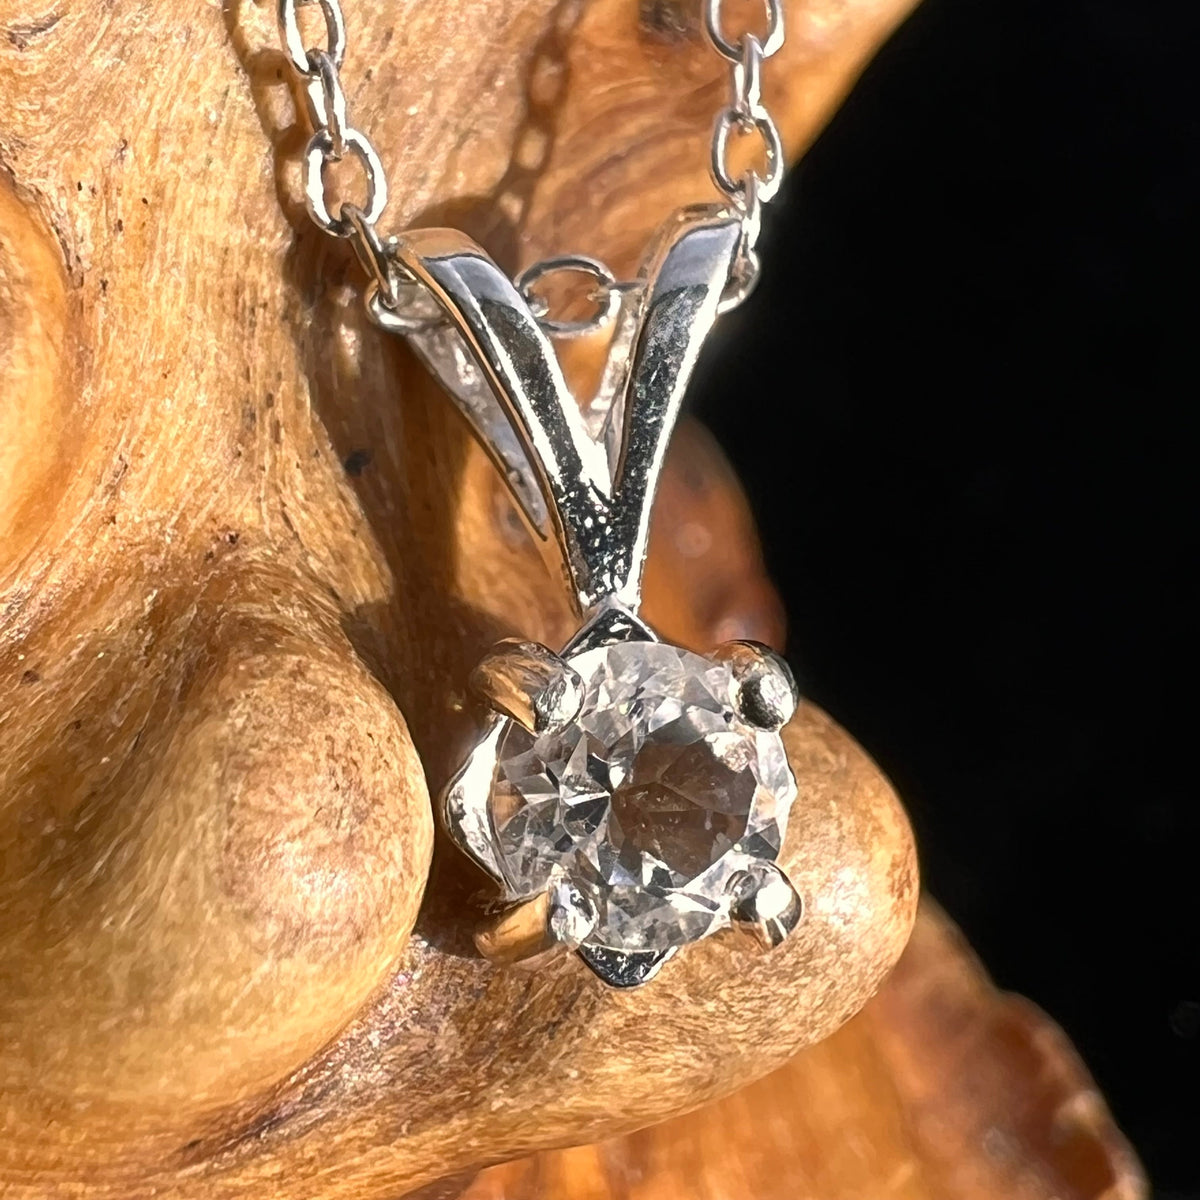 Faceted Petalite Gem Necklace Sterling Silver #4001-Moldavite Life